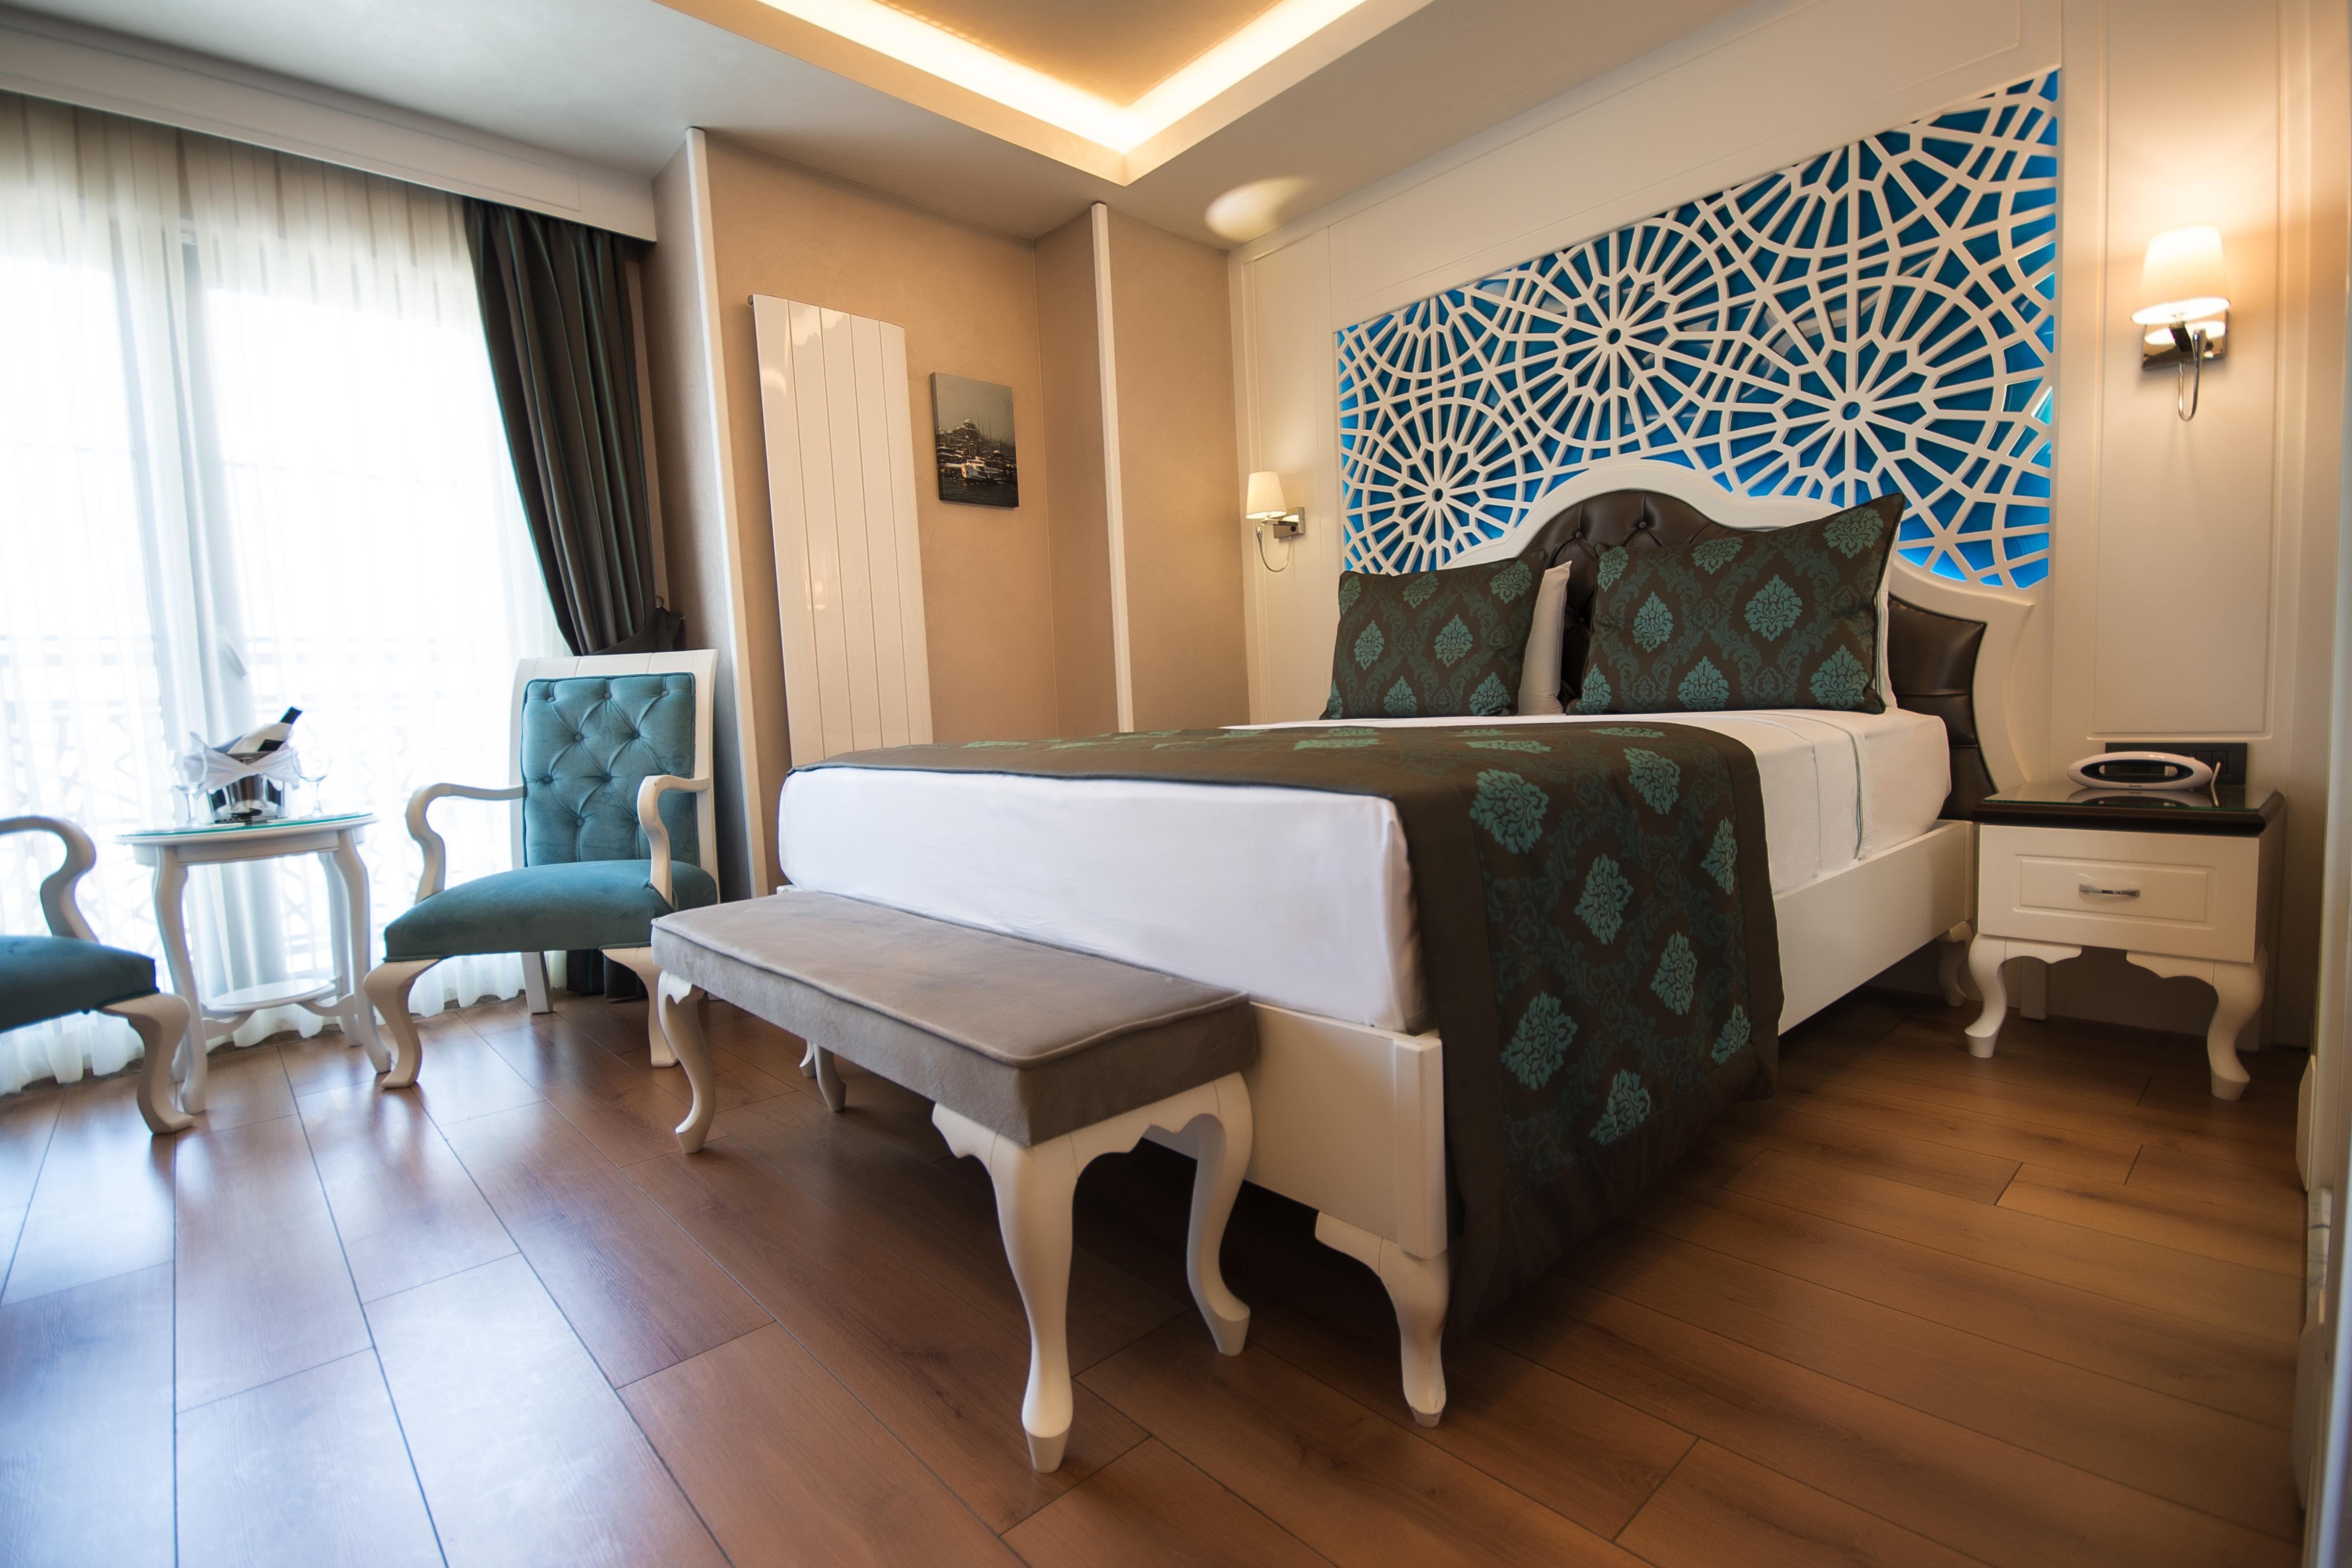 Antusa Palace Hotel & Spa Стамбул Екстер'єр фото